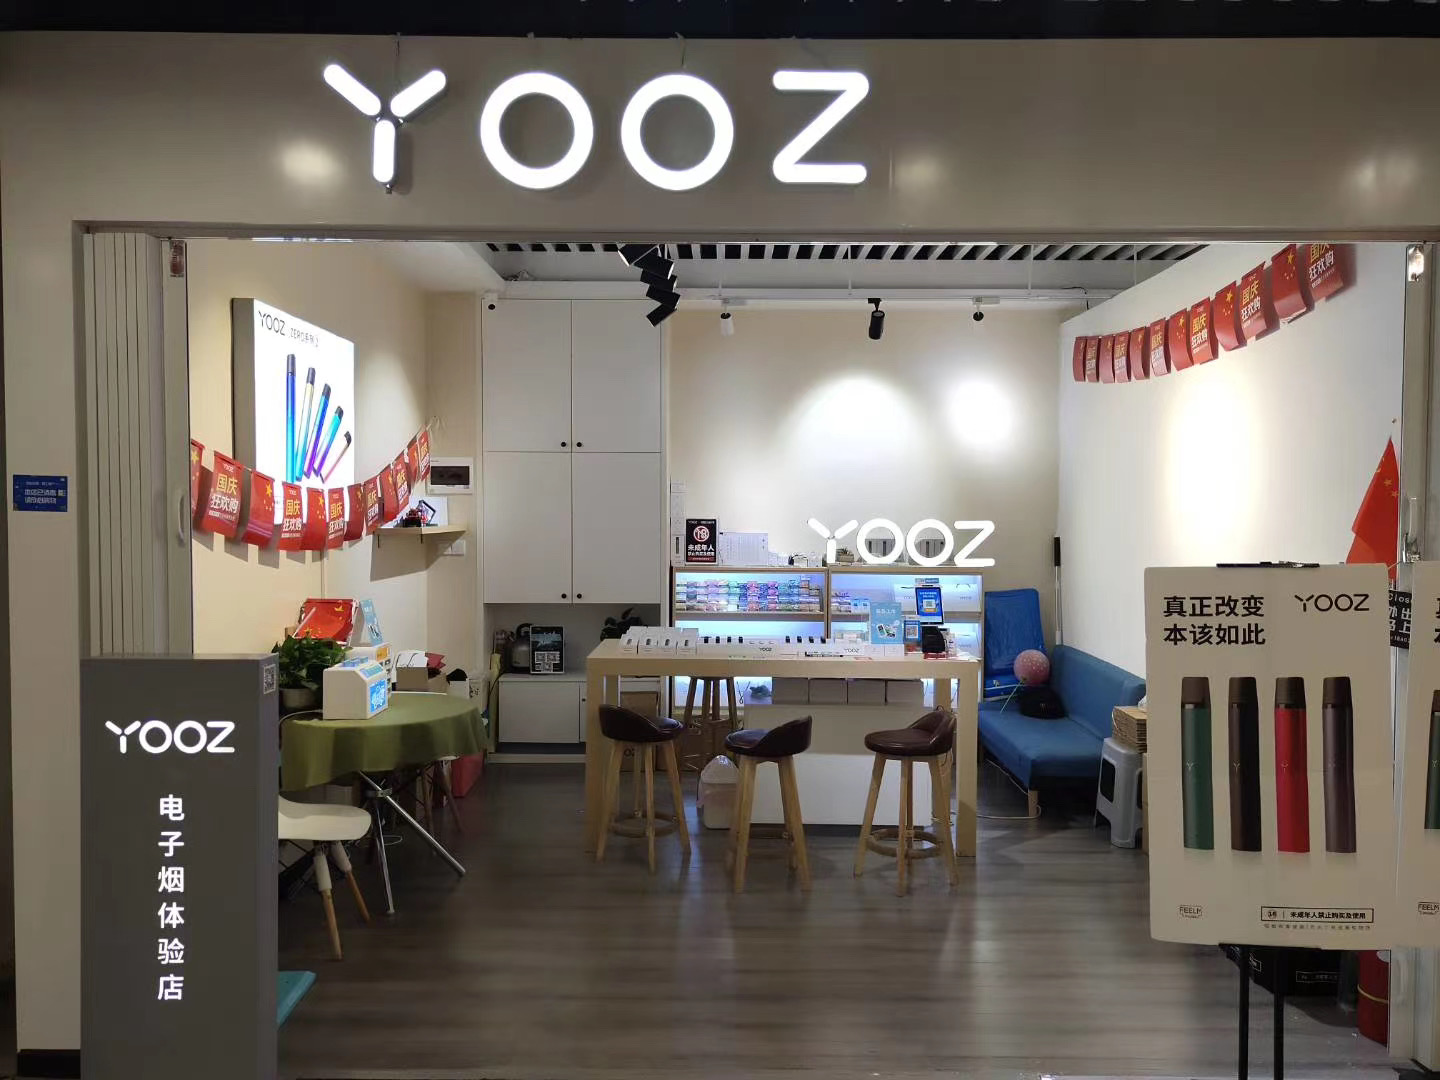 yooz实体店标准装一个烟杆   两个烟弹是268元,这个是yooz一代的价格